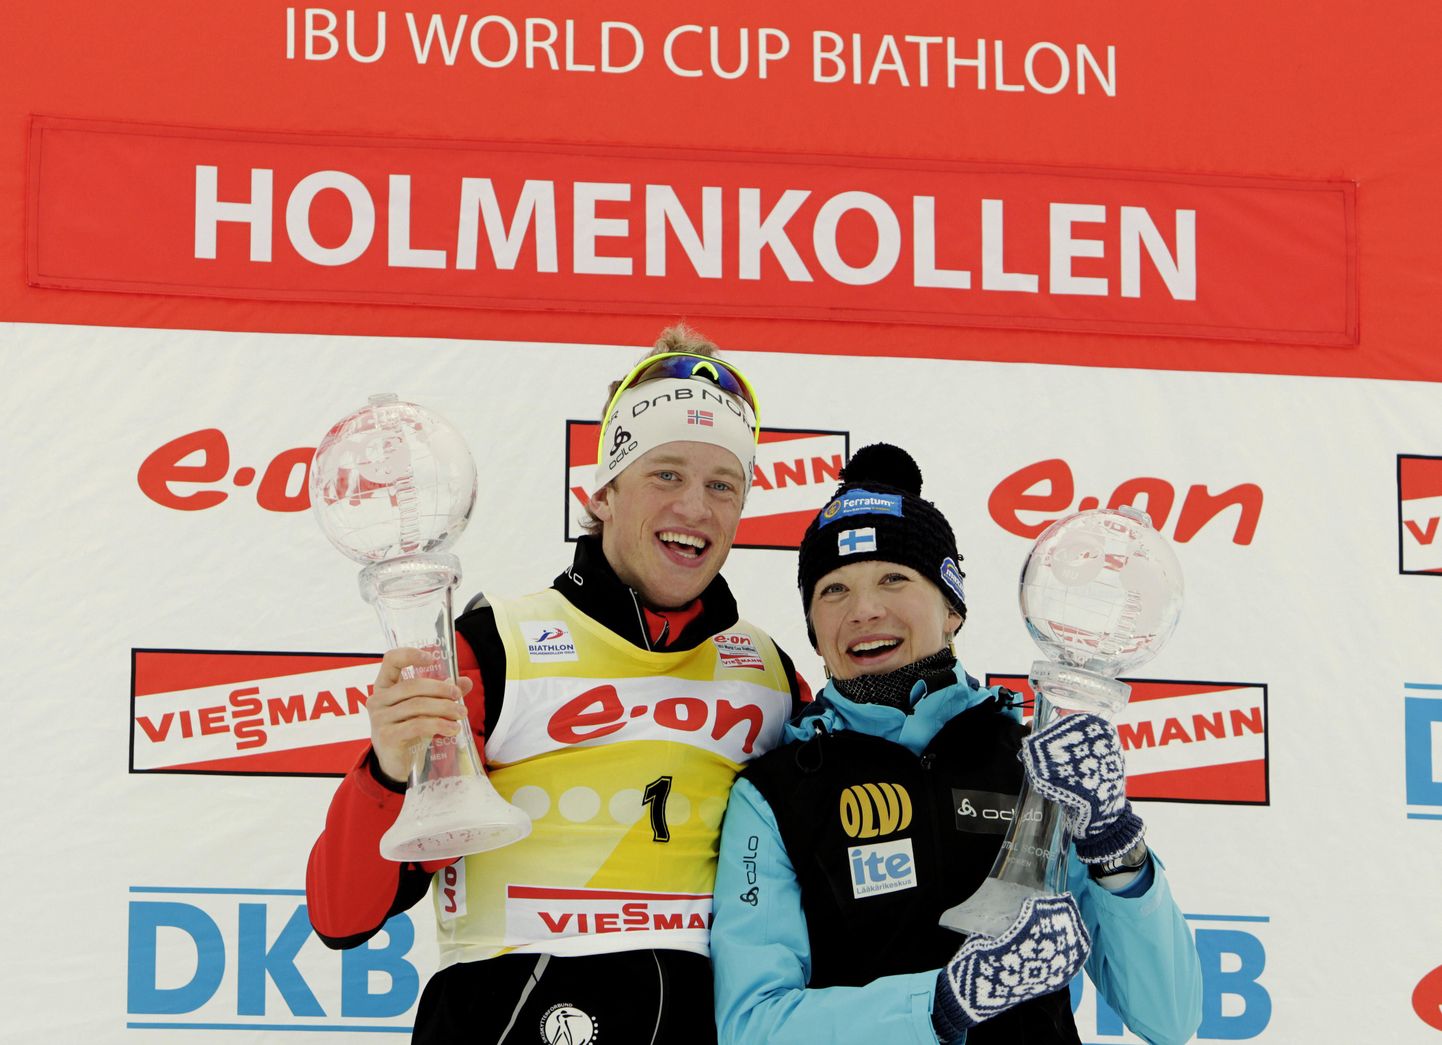 Tänavused MK-sarja üldvõitjad Tarjei Bø ja Kaisa Mäkäräinen on ka Kamtšatkal stardis.